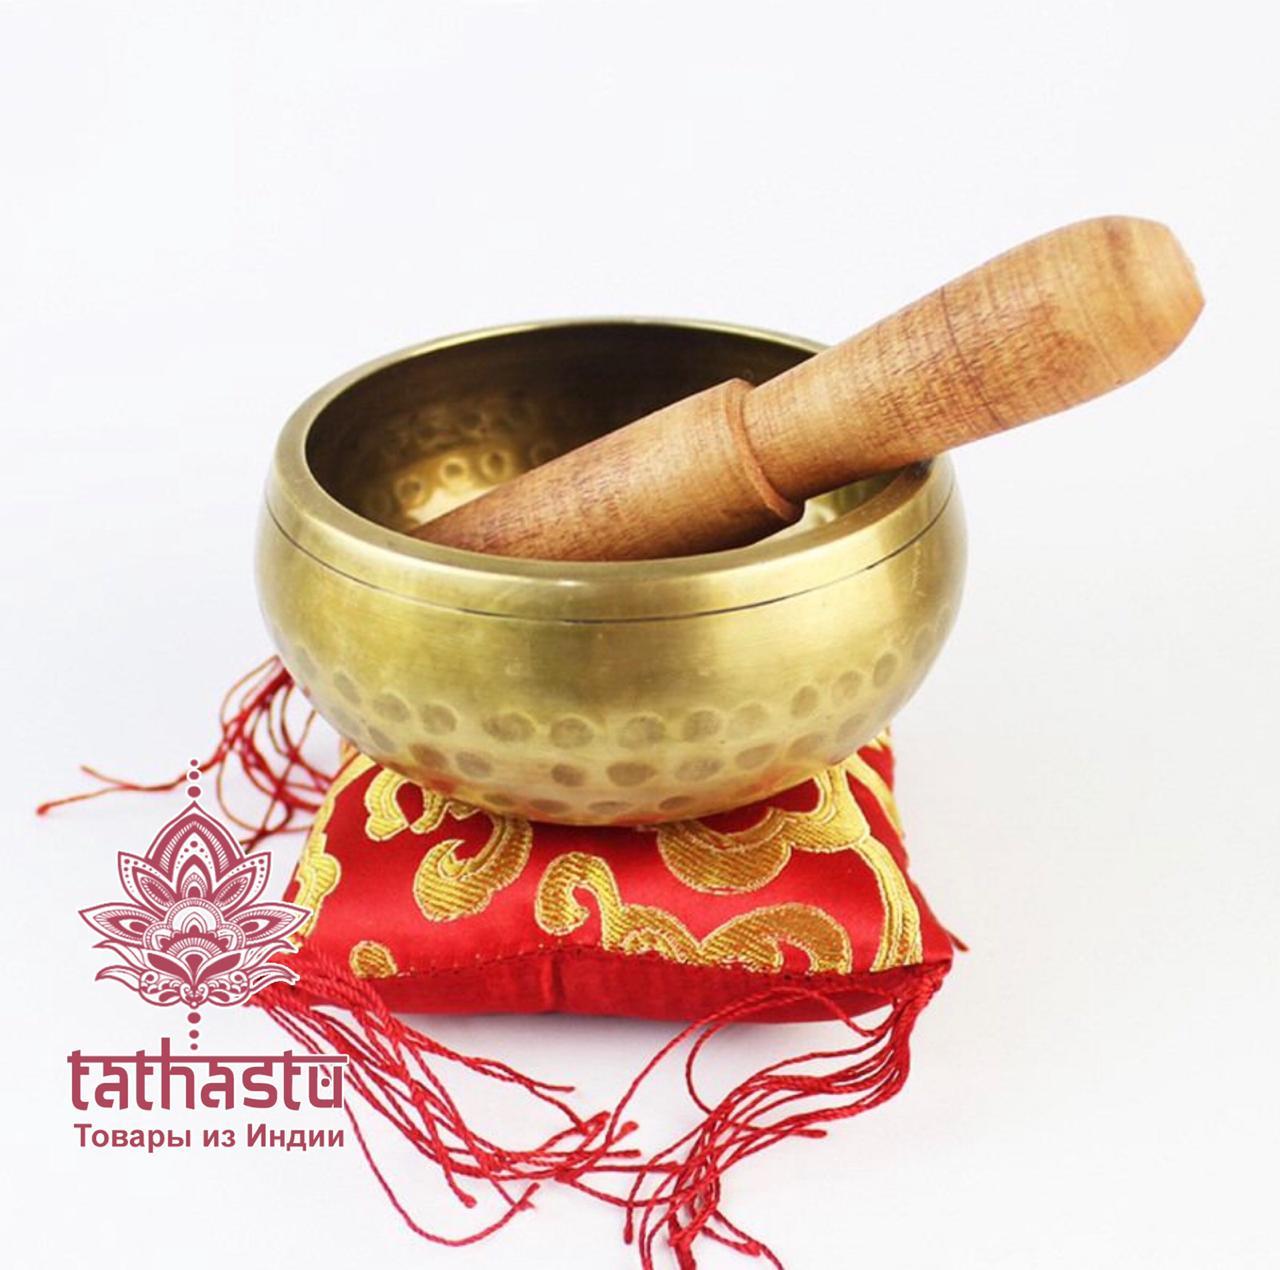 Поющие тибетские чаши. Tathastu товары и индии